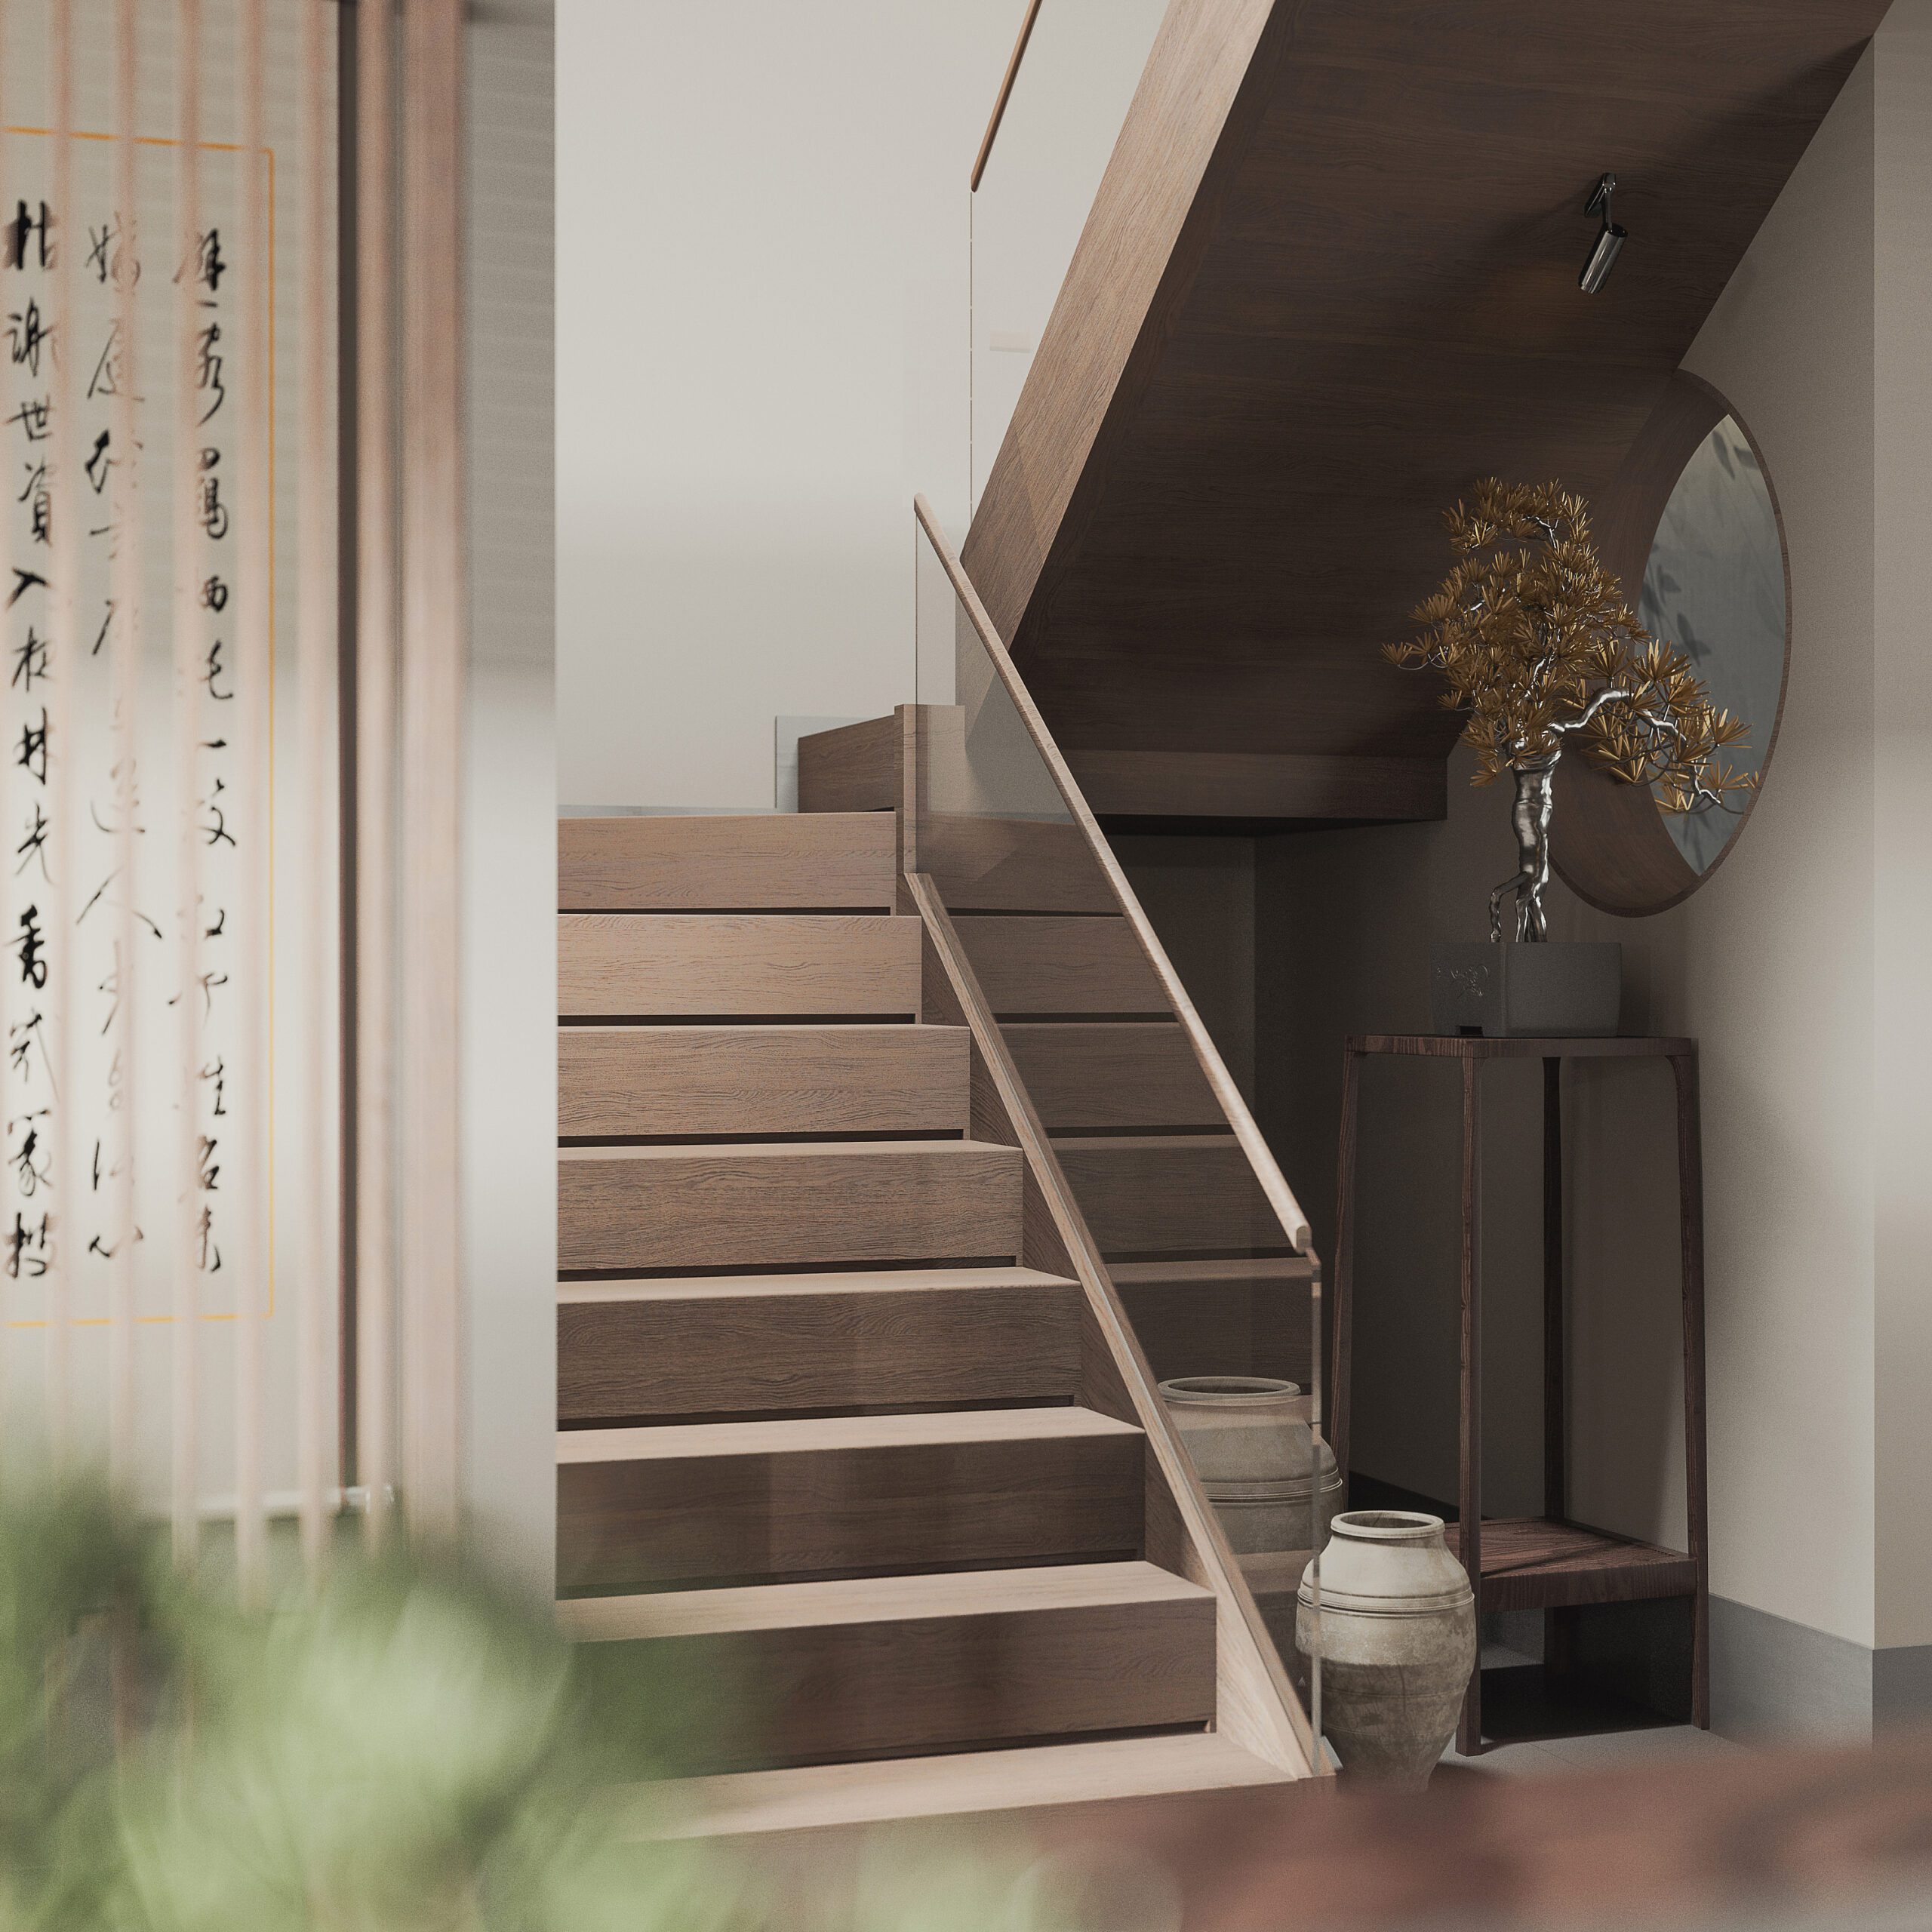 樓梯間空間角落裡擺放著中式擺飾品，增加空間中的協調性